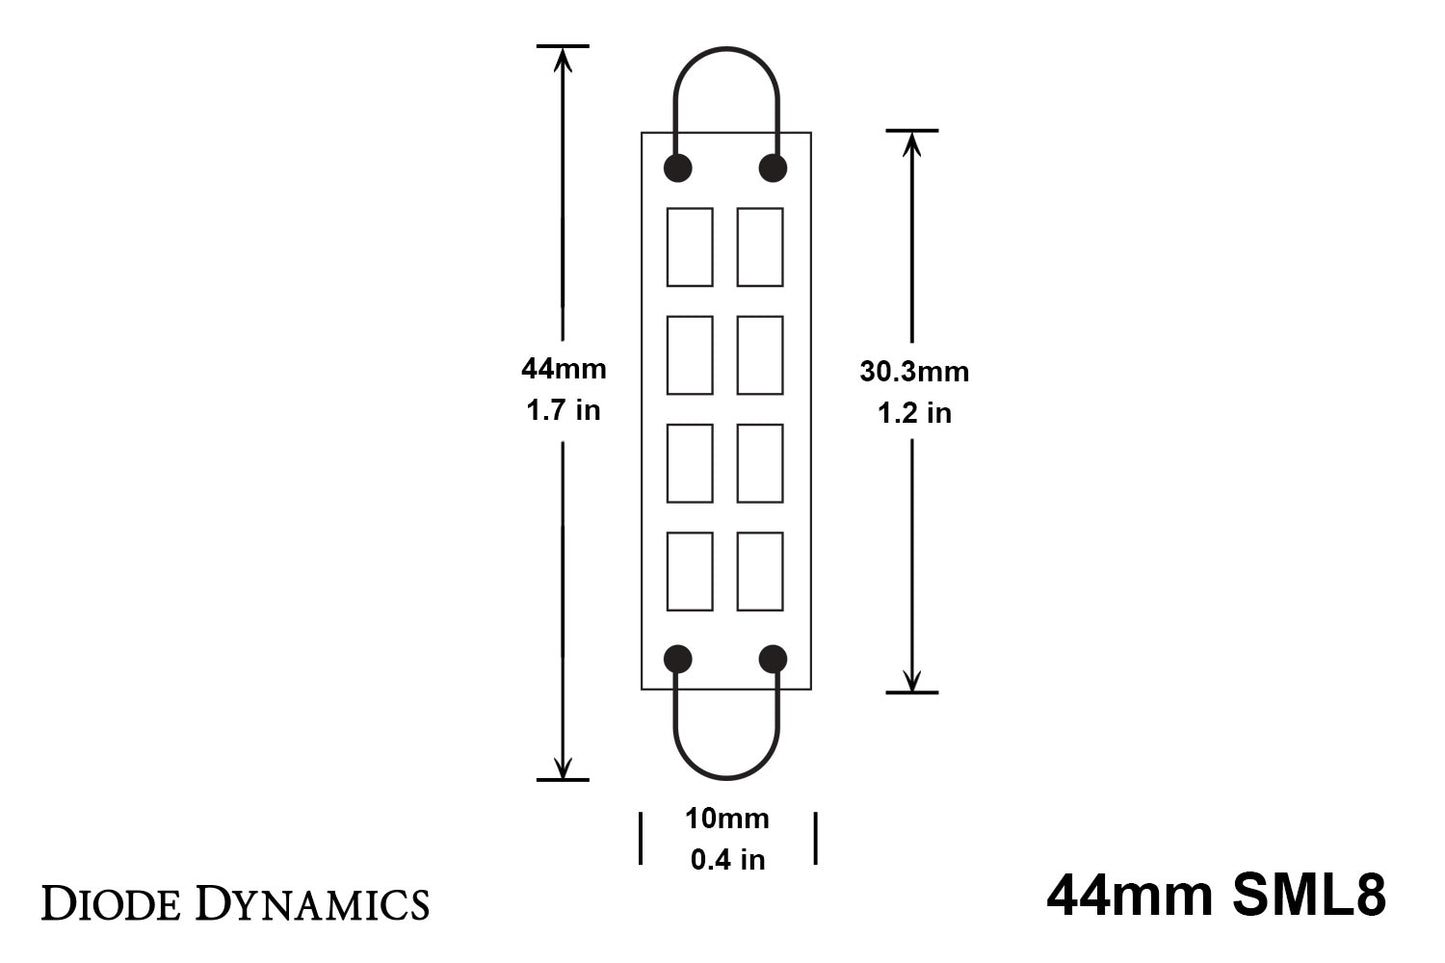 44mm SML8 LED Bulb Amber Single Diode Dynamics